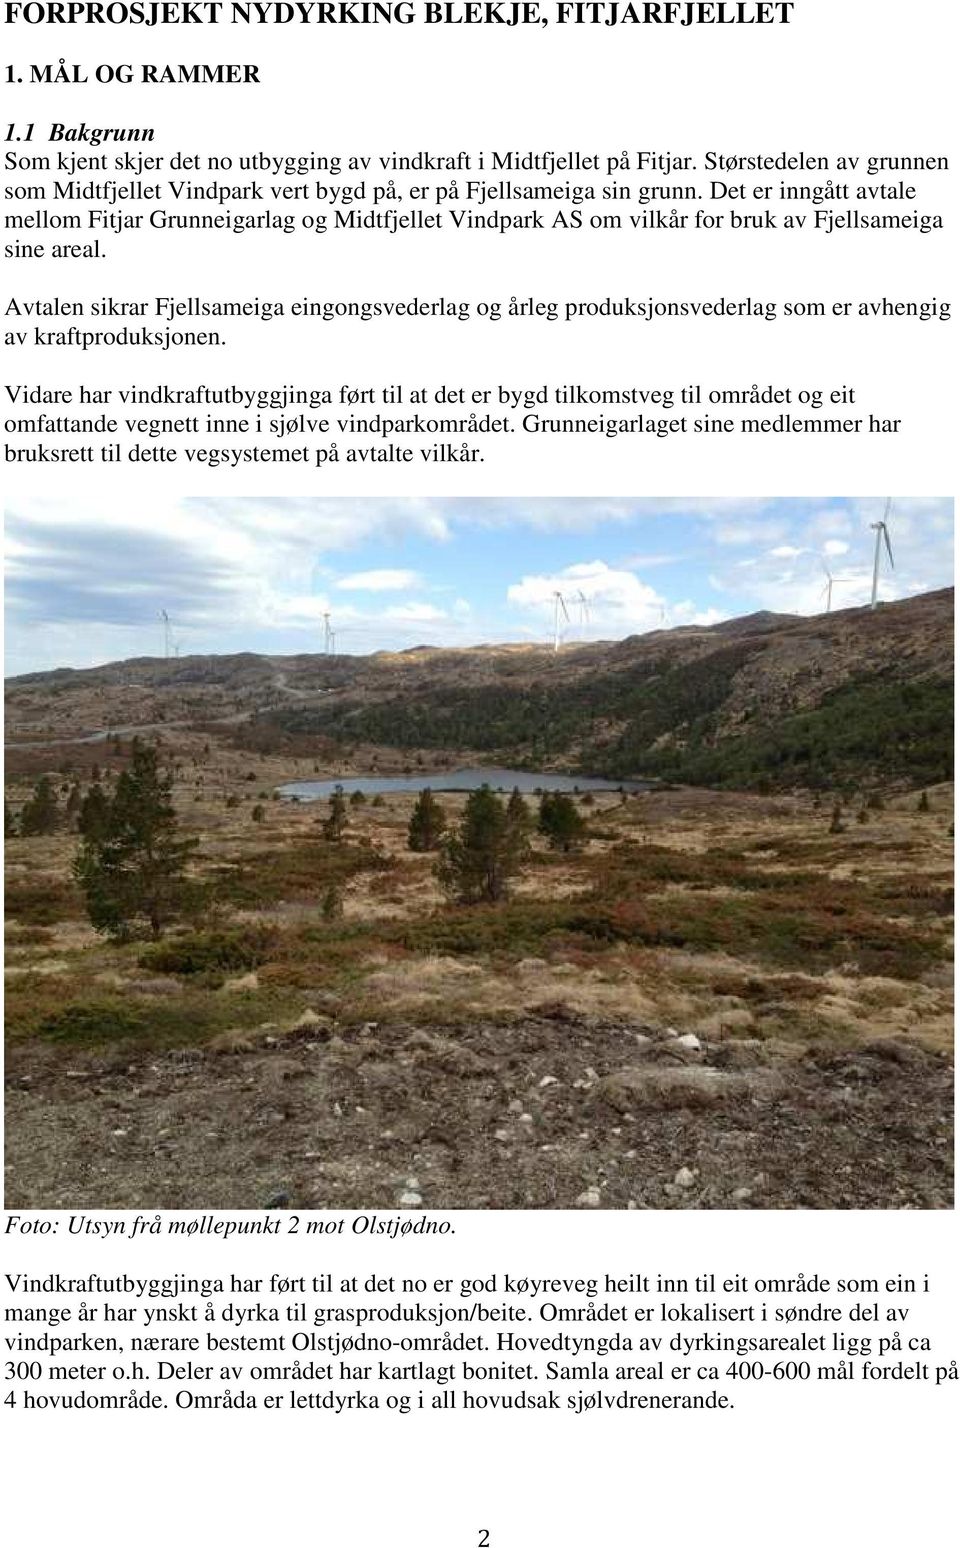 Det er inngått avtale mellom Fitjar Grunneigarlag og Midtfjellet Vindpark AS om vilkår for bruk av Fjellsameiga sine areal.